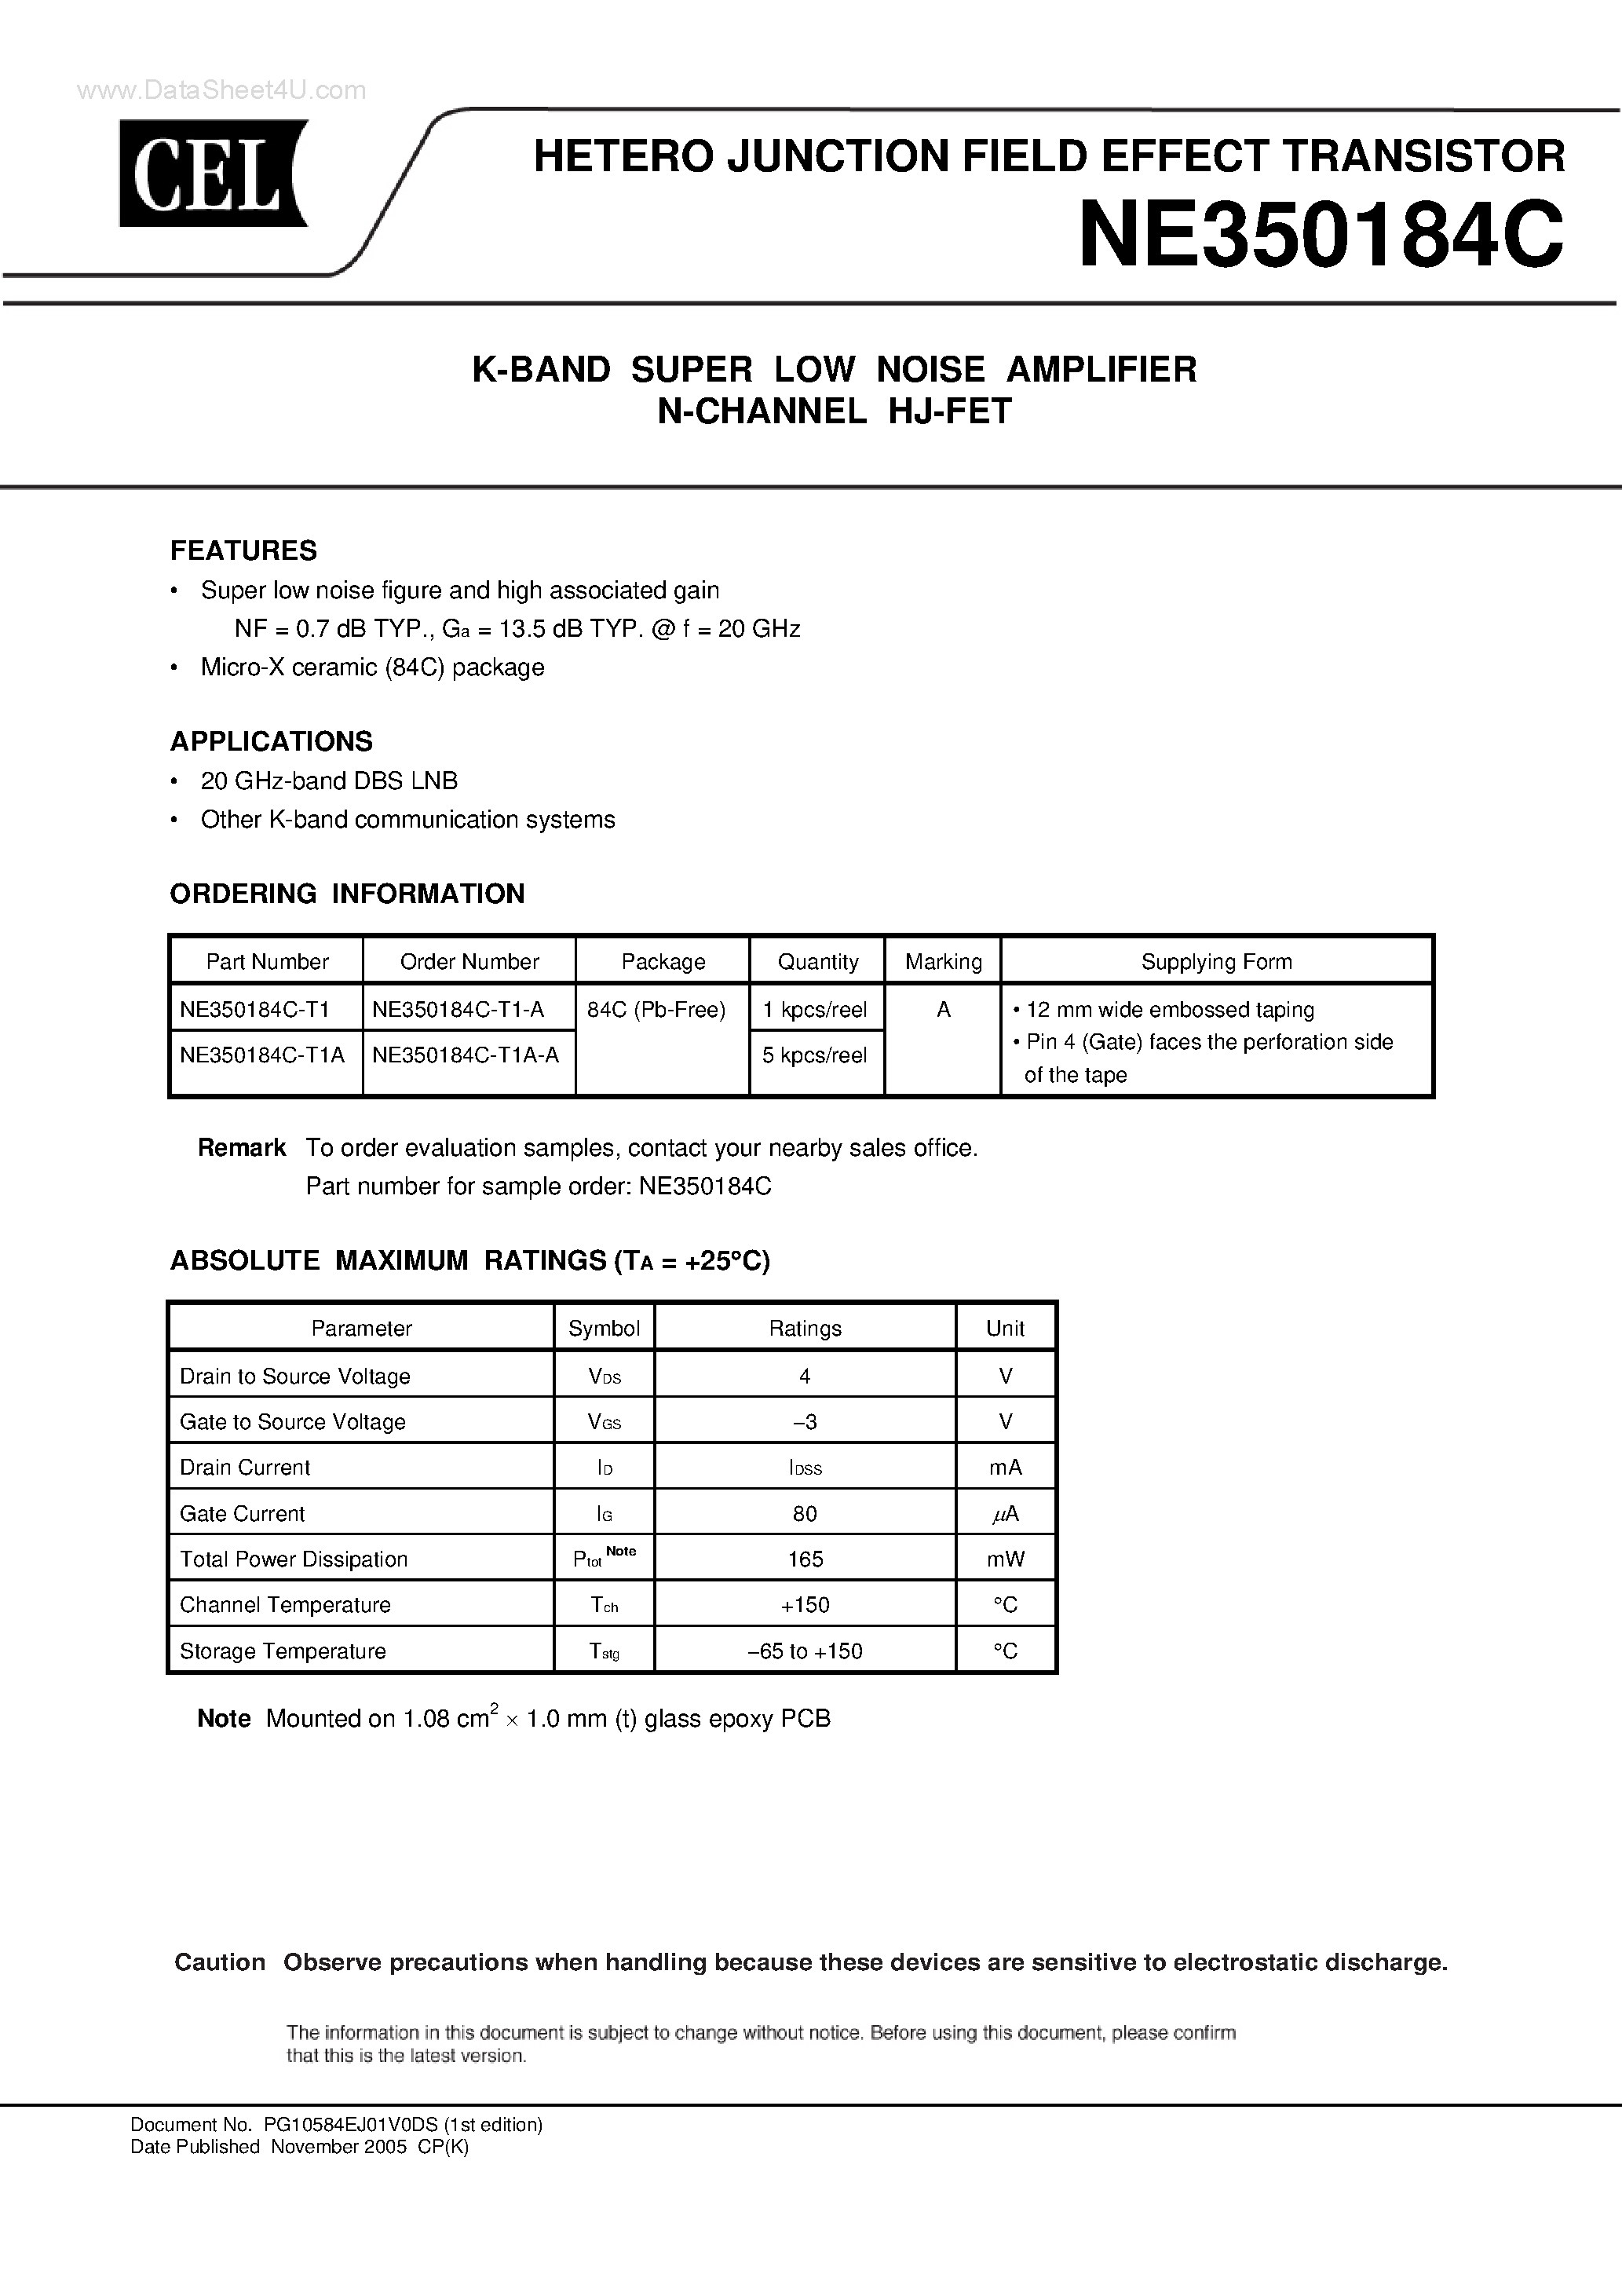 Datasheet NE350184C - HETERO JUNCTION FIELD EFFECT TRANSISTOR K-BAND SUPER LOW NOISE AMPLIFIER N-CHANNEL HJ-FET page 1